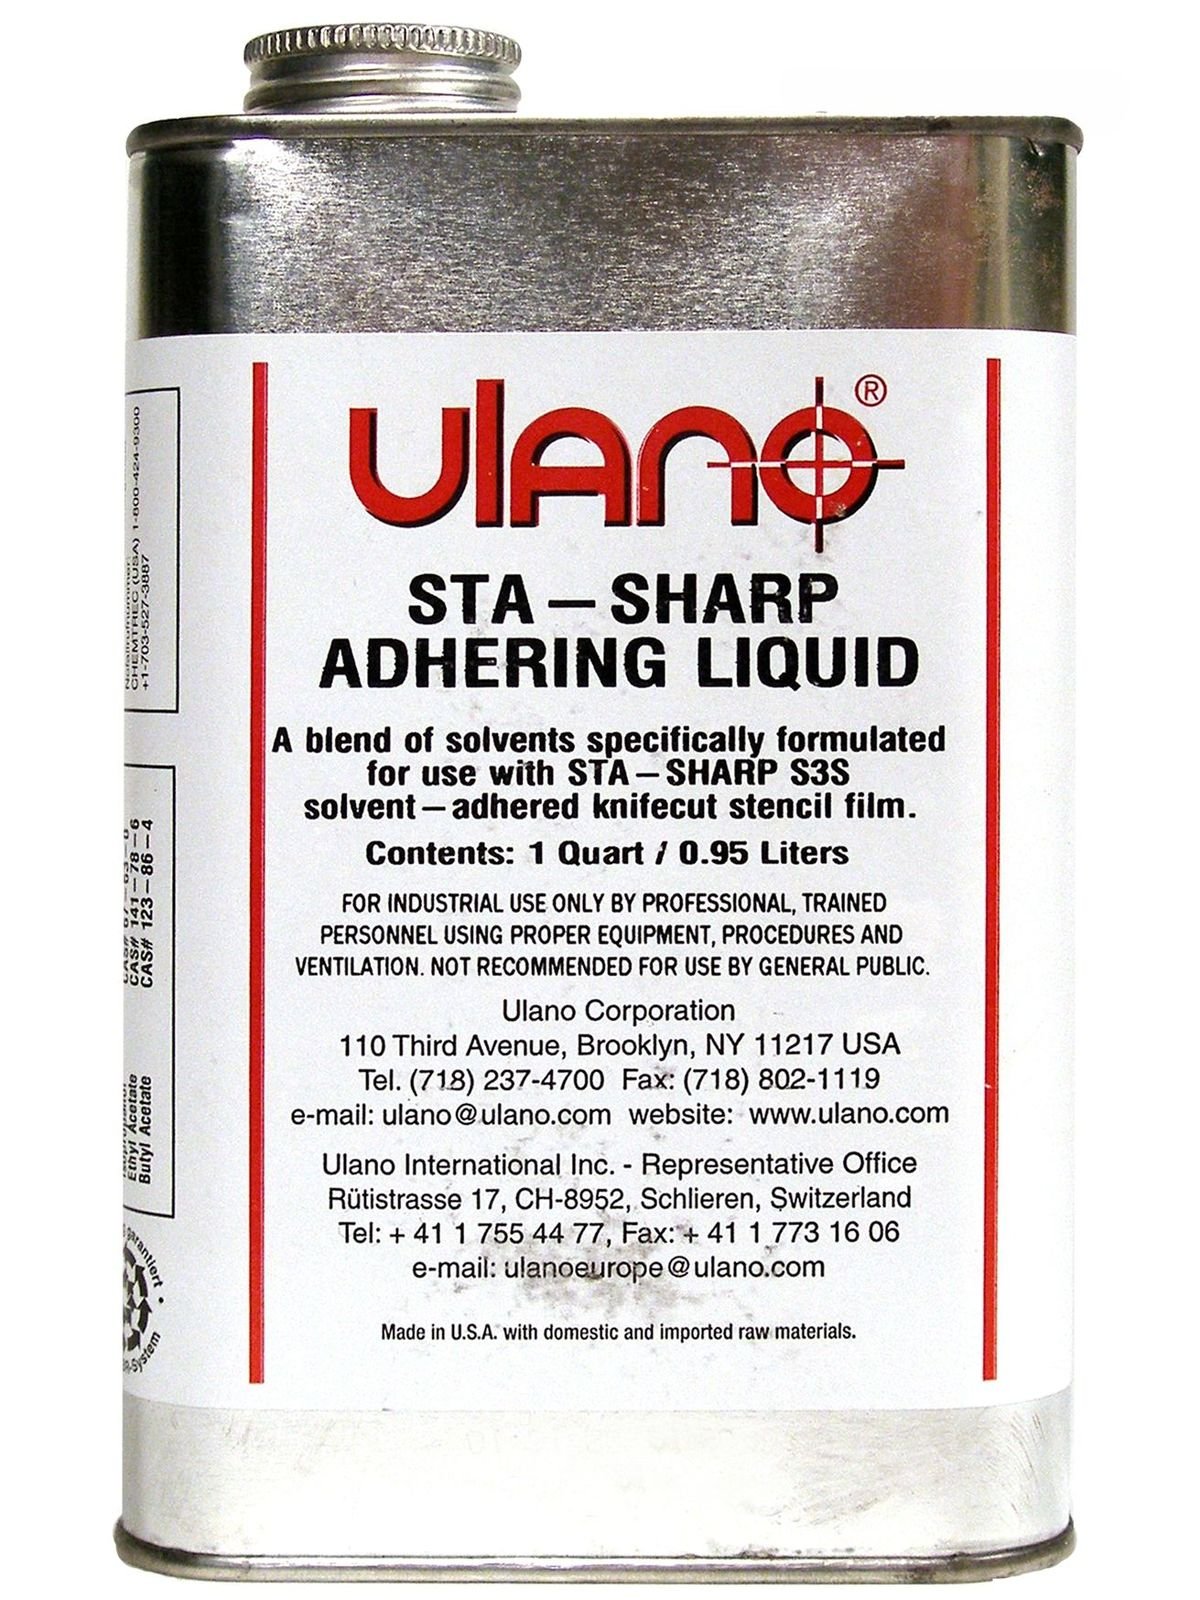 Ulano - Stasharp Adhering Liquid